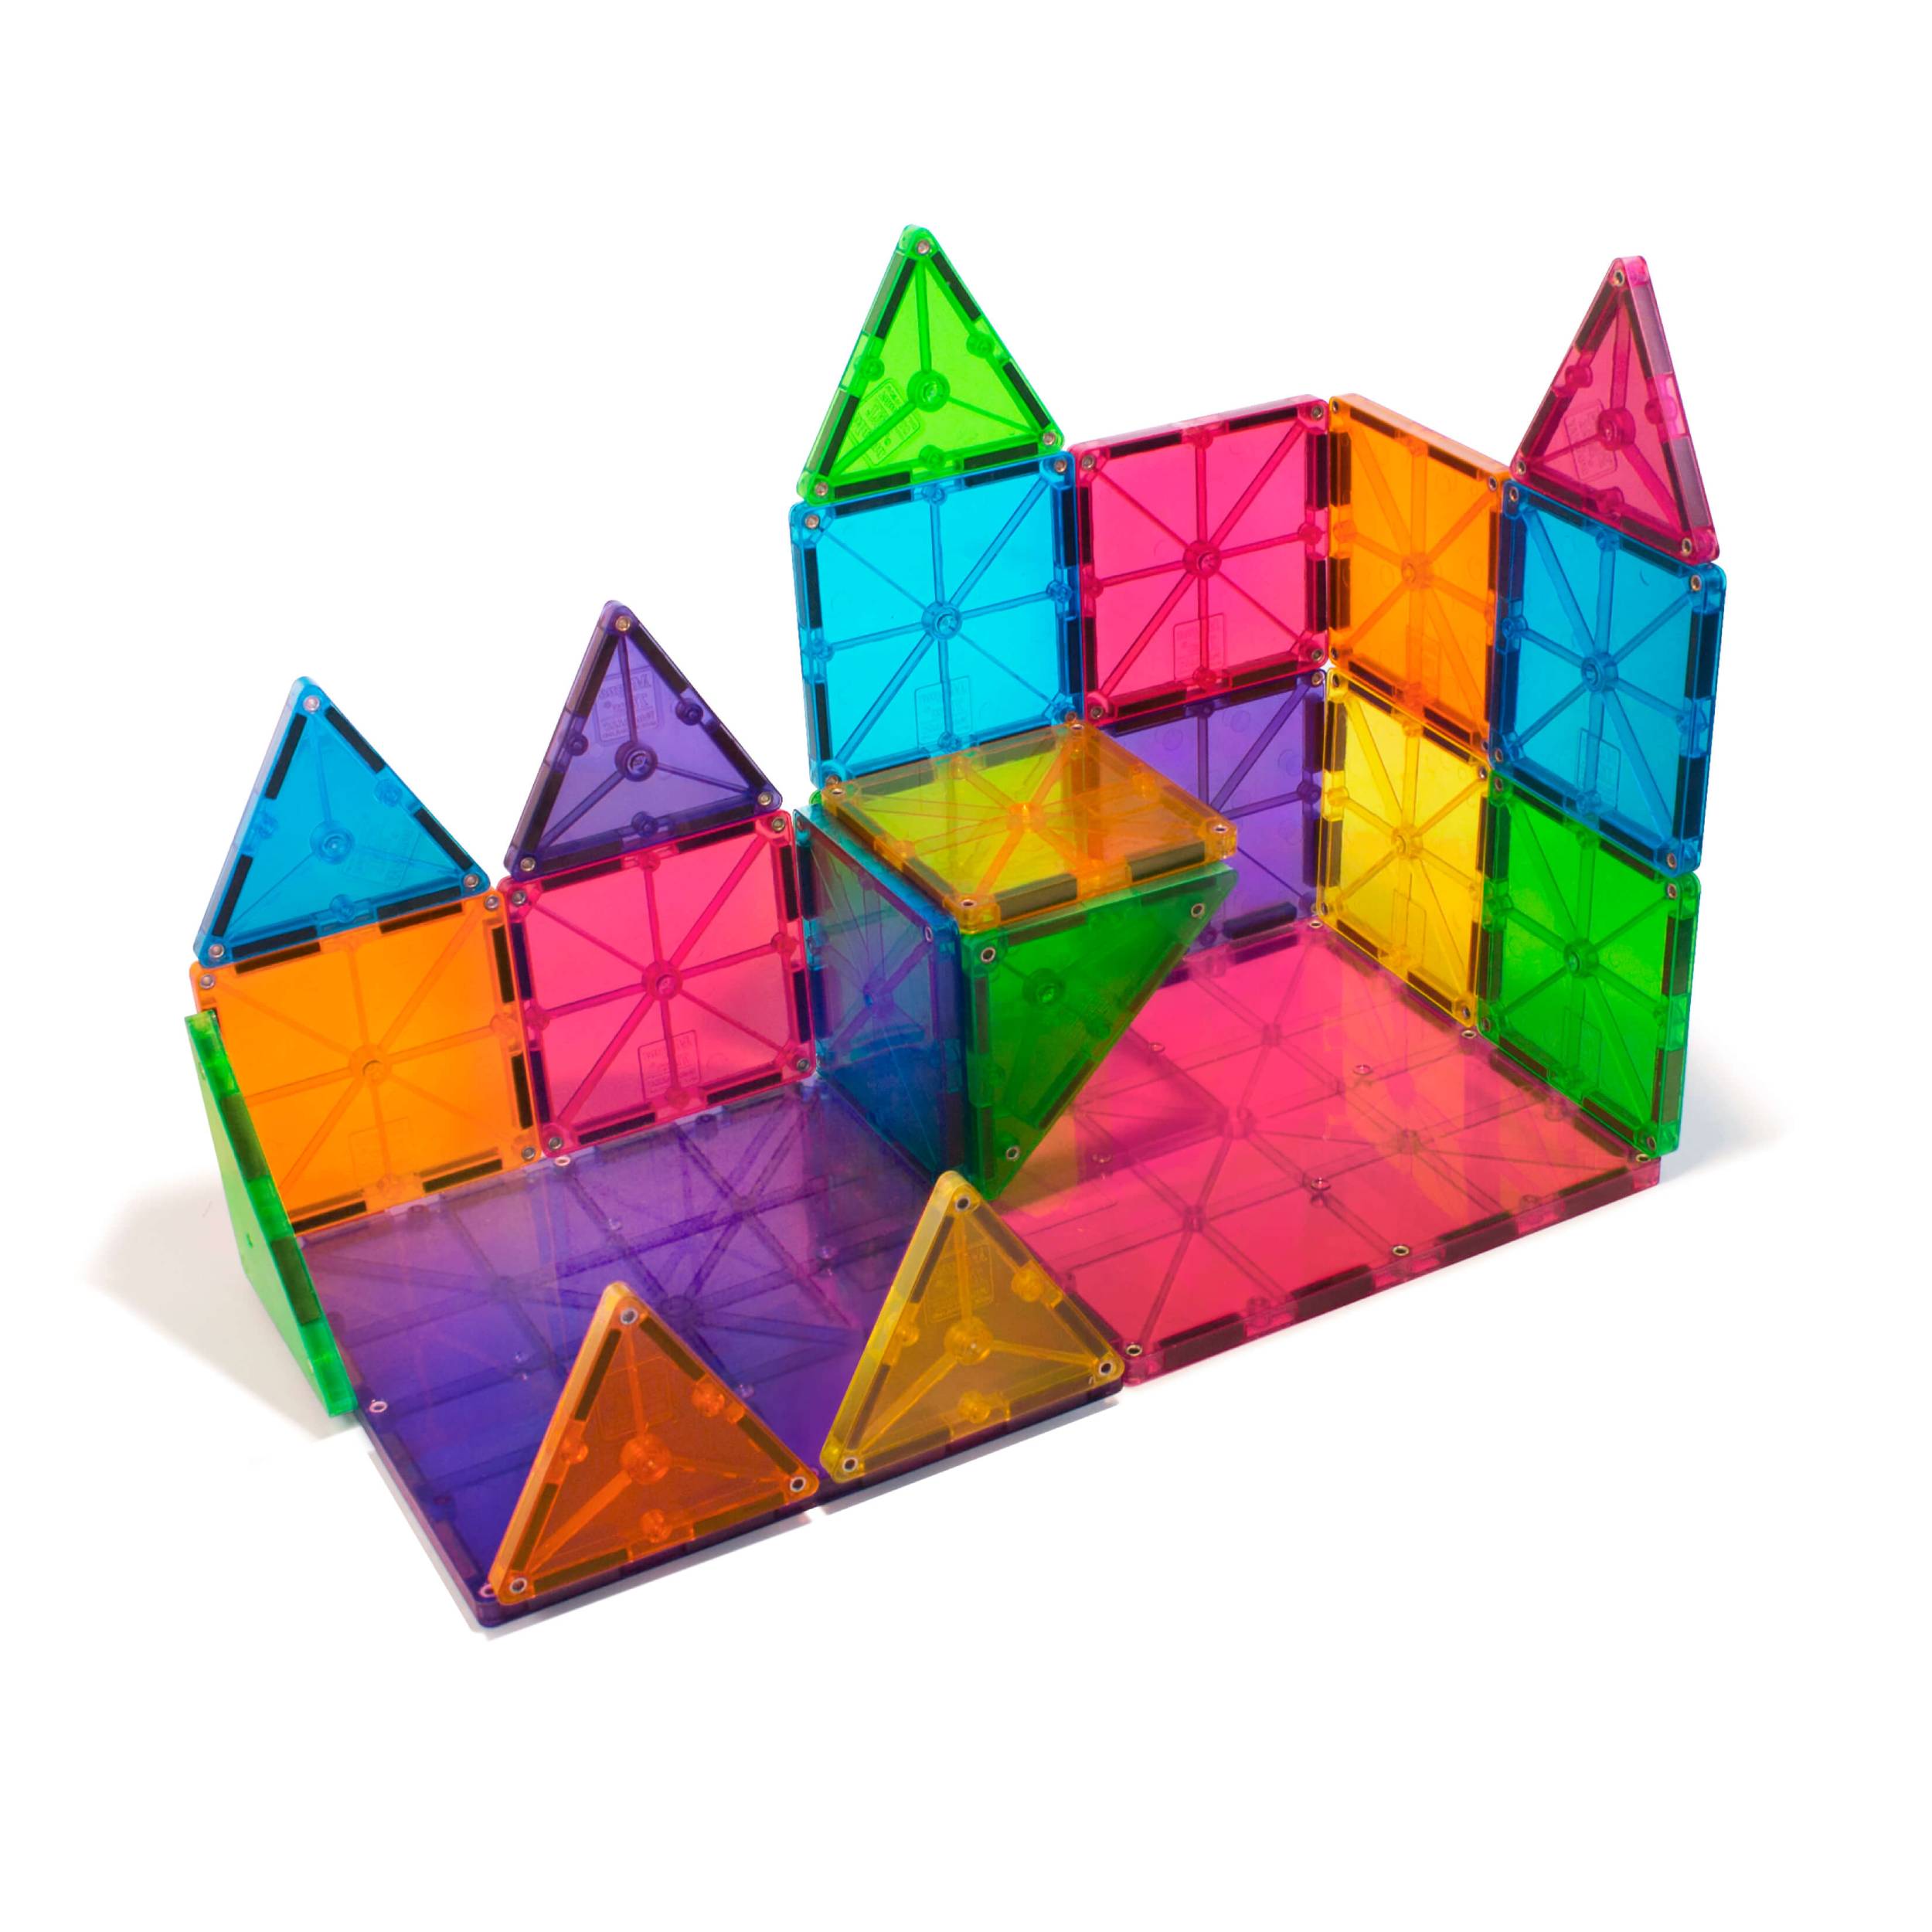 MAGNA-TILES Tiles Clear Colors 32-Piece Set